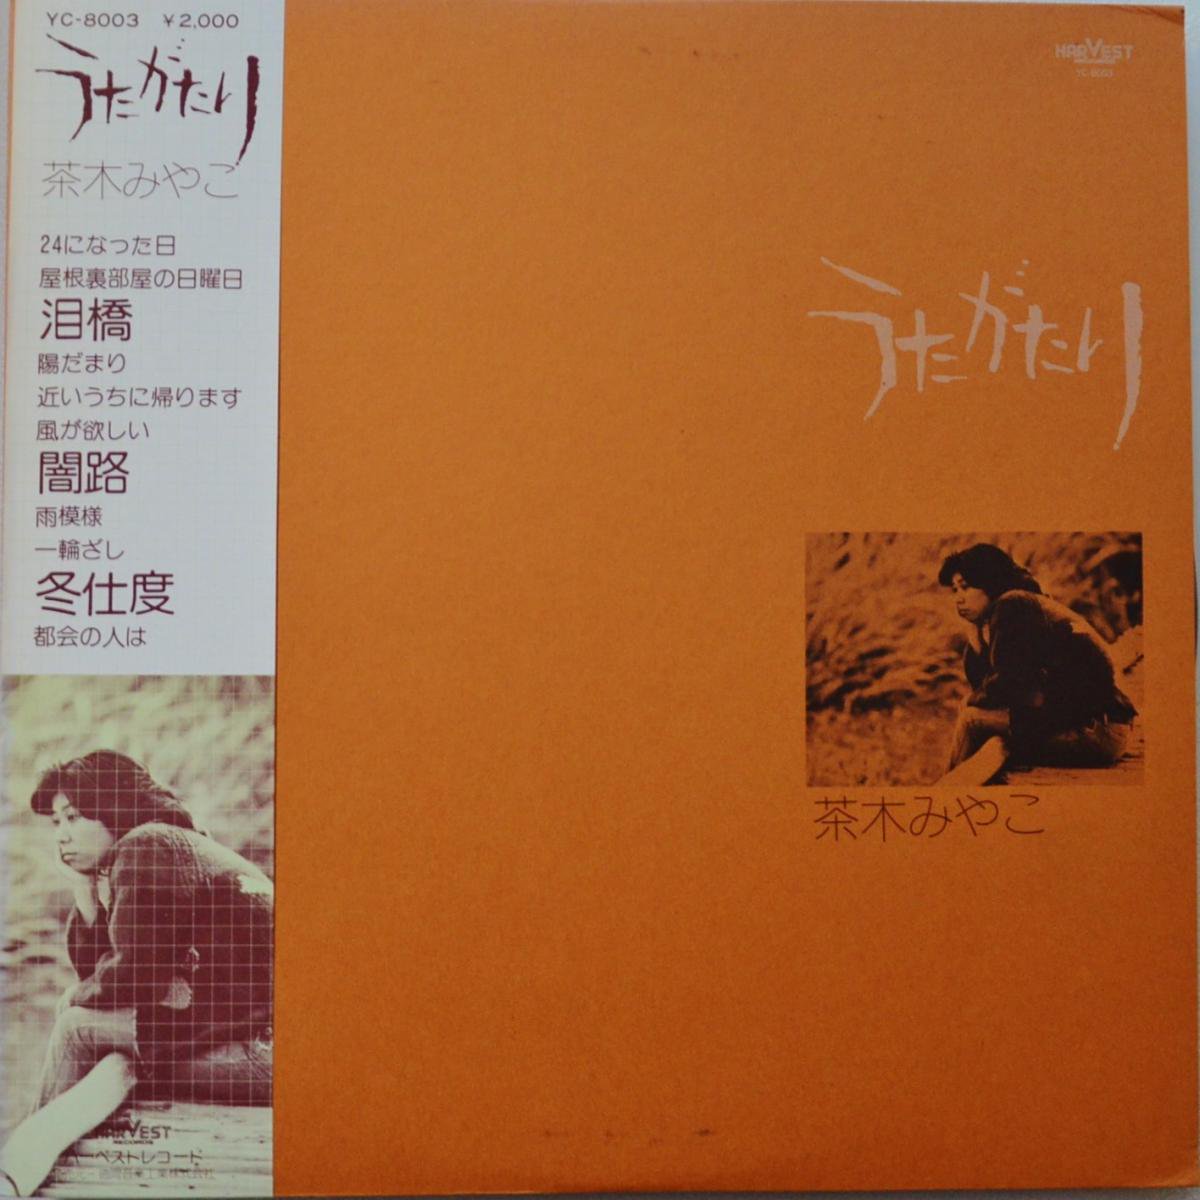 茶木みやこ CHAKI MIYAKO / うたがたり (LP) - HIP TANK RECORDS